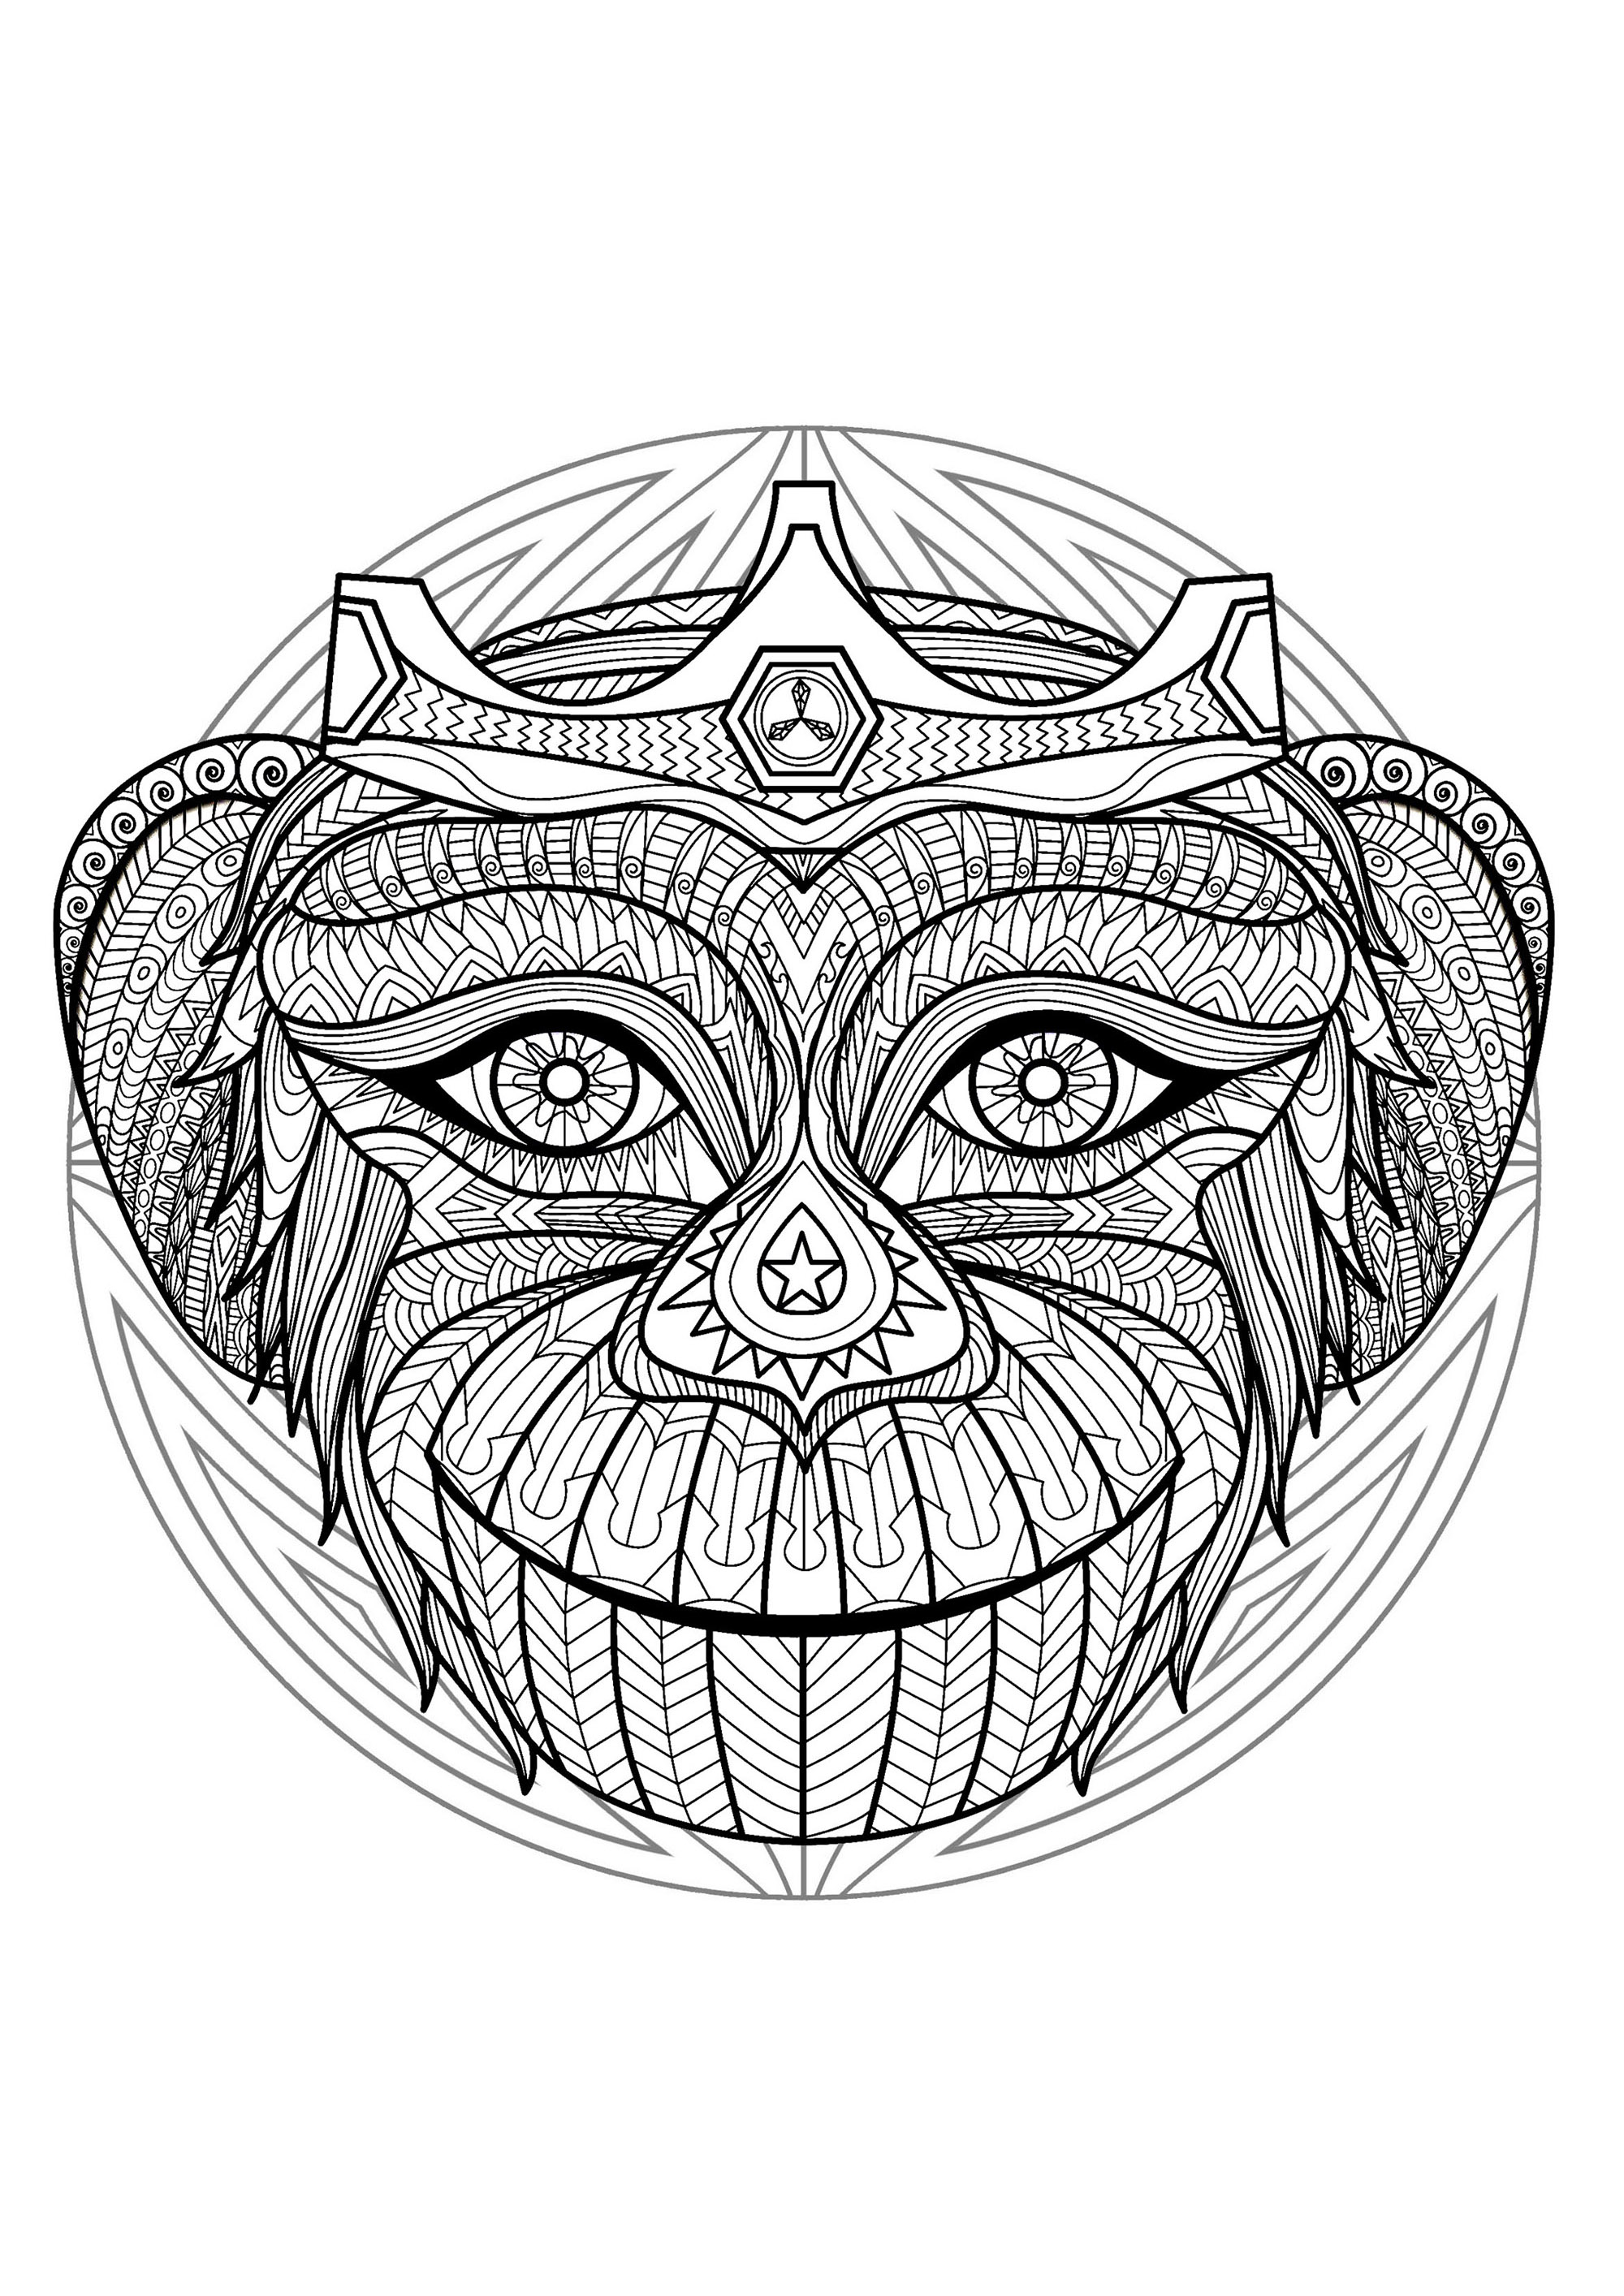 Un Mandala con una scimmia birichina, per chi preferisce mettere a colori elementi concreti e vivi. Ripristinare la pace dentro di noi, diventare più creativi, sviluppare una qualità, incoraggiare a lasciarsi andare... Questo è ciò che i Mandala ci permettono di fare.